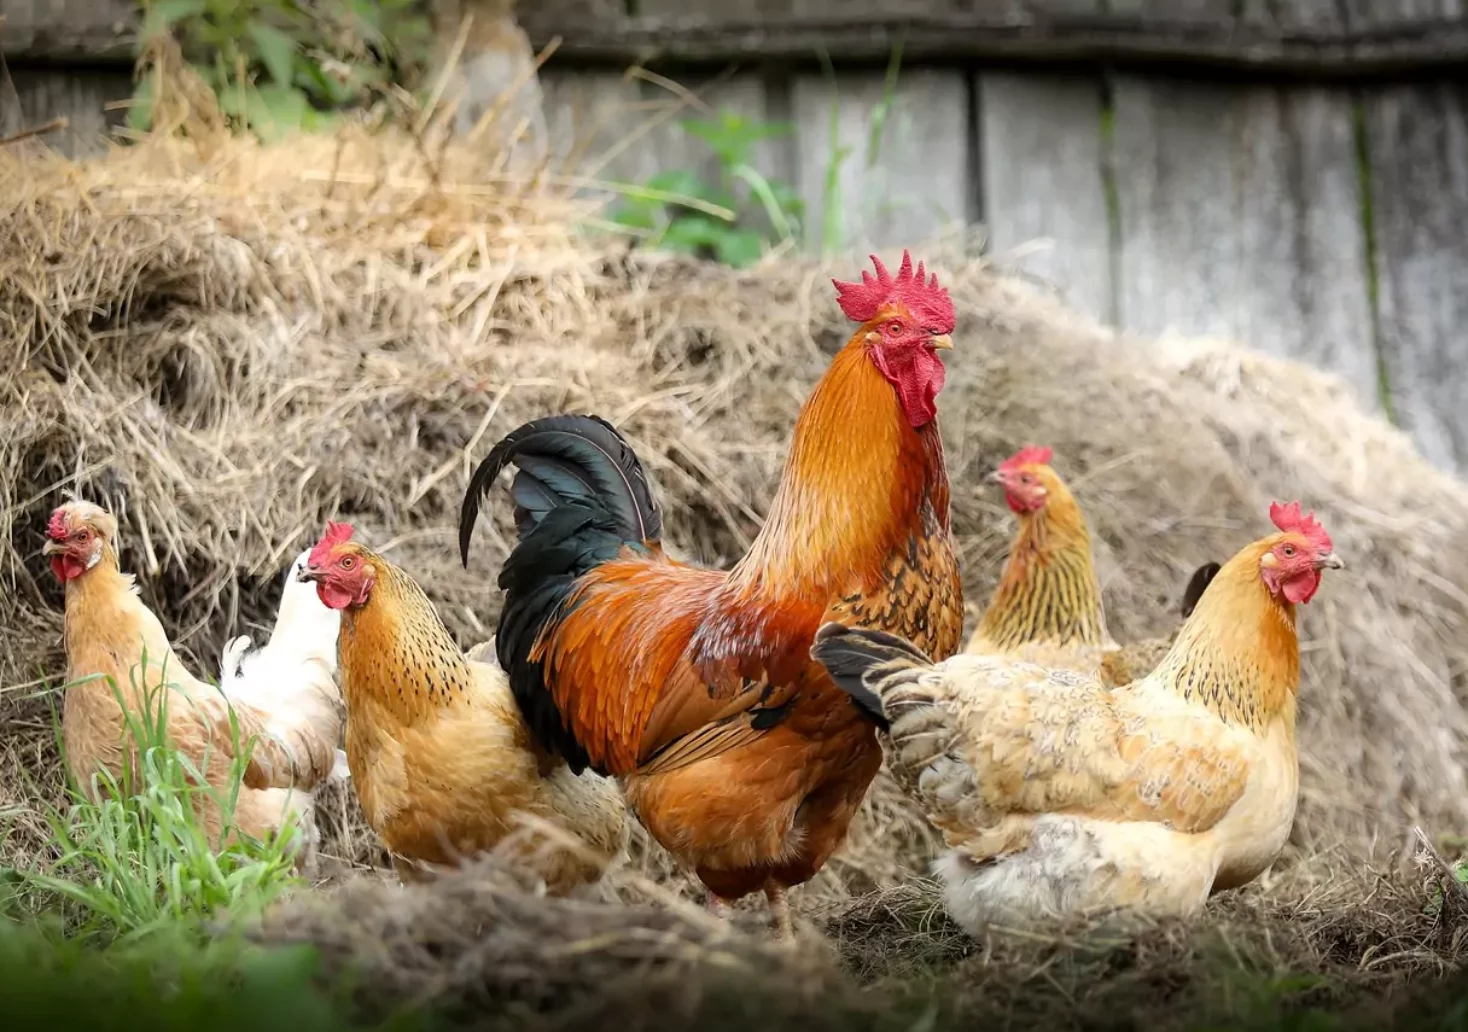 Foto in Beitrag von 5min.at: Zu sehen sind mehrere Hühner und ein Hahn vor einem Heuhaufen.